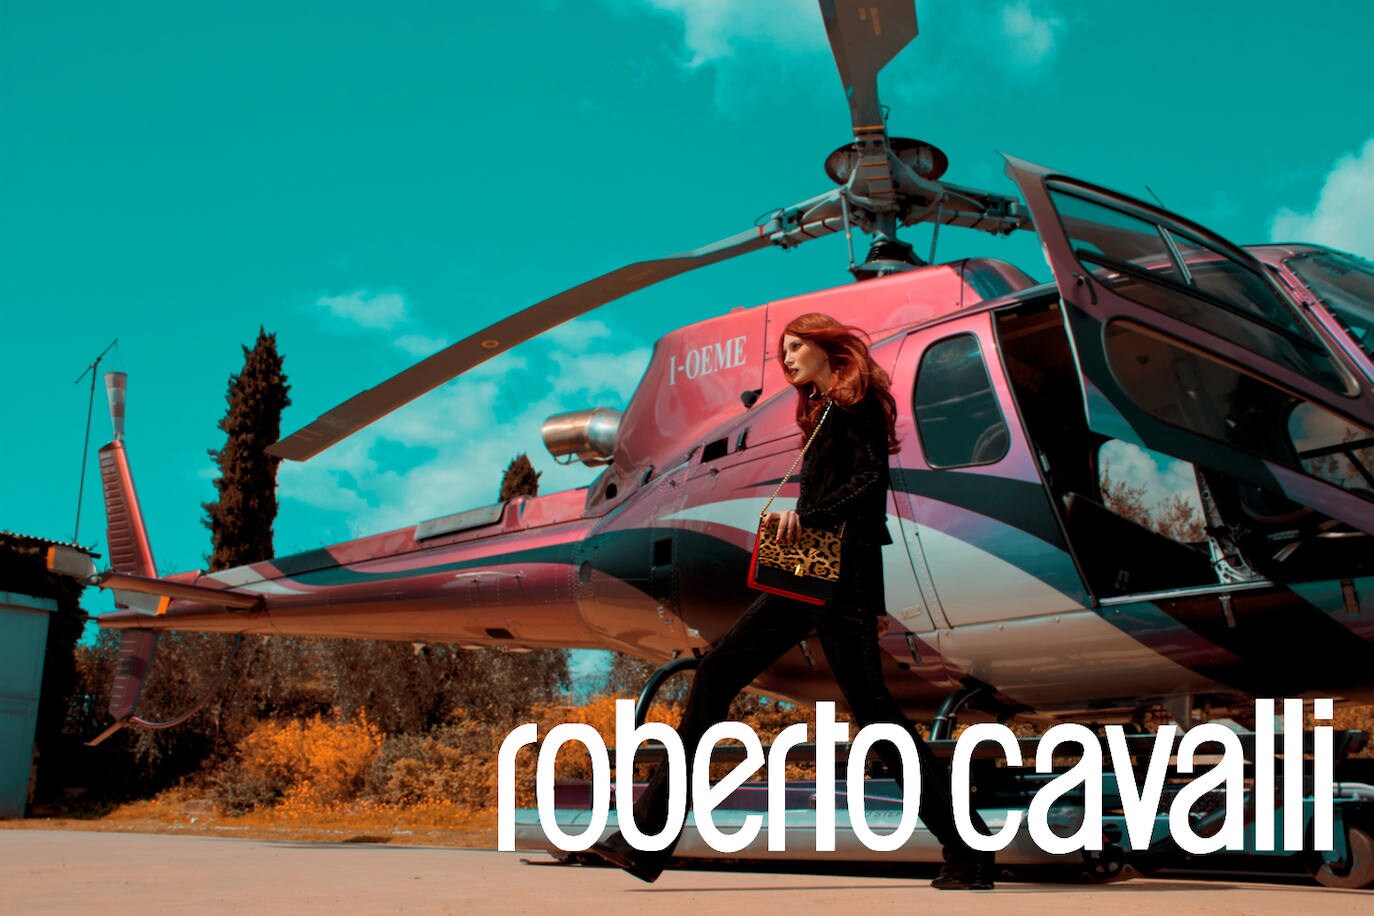 Así quedó su rompedora campaña para Roberto Cavalli, de la colección otoño invierno 2013-2014, en la que usó gallinas